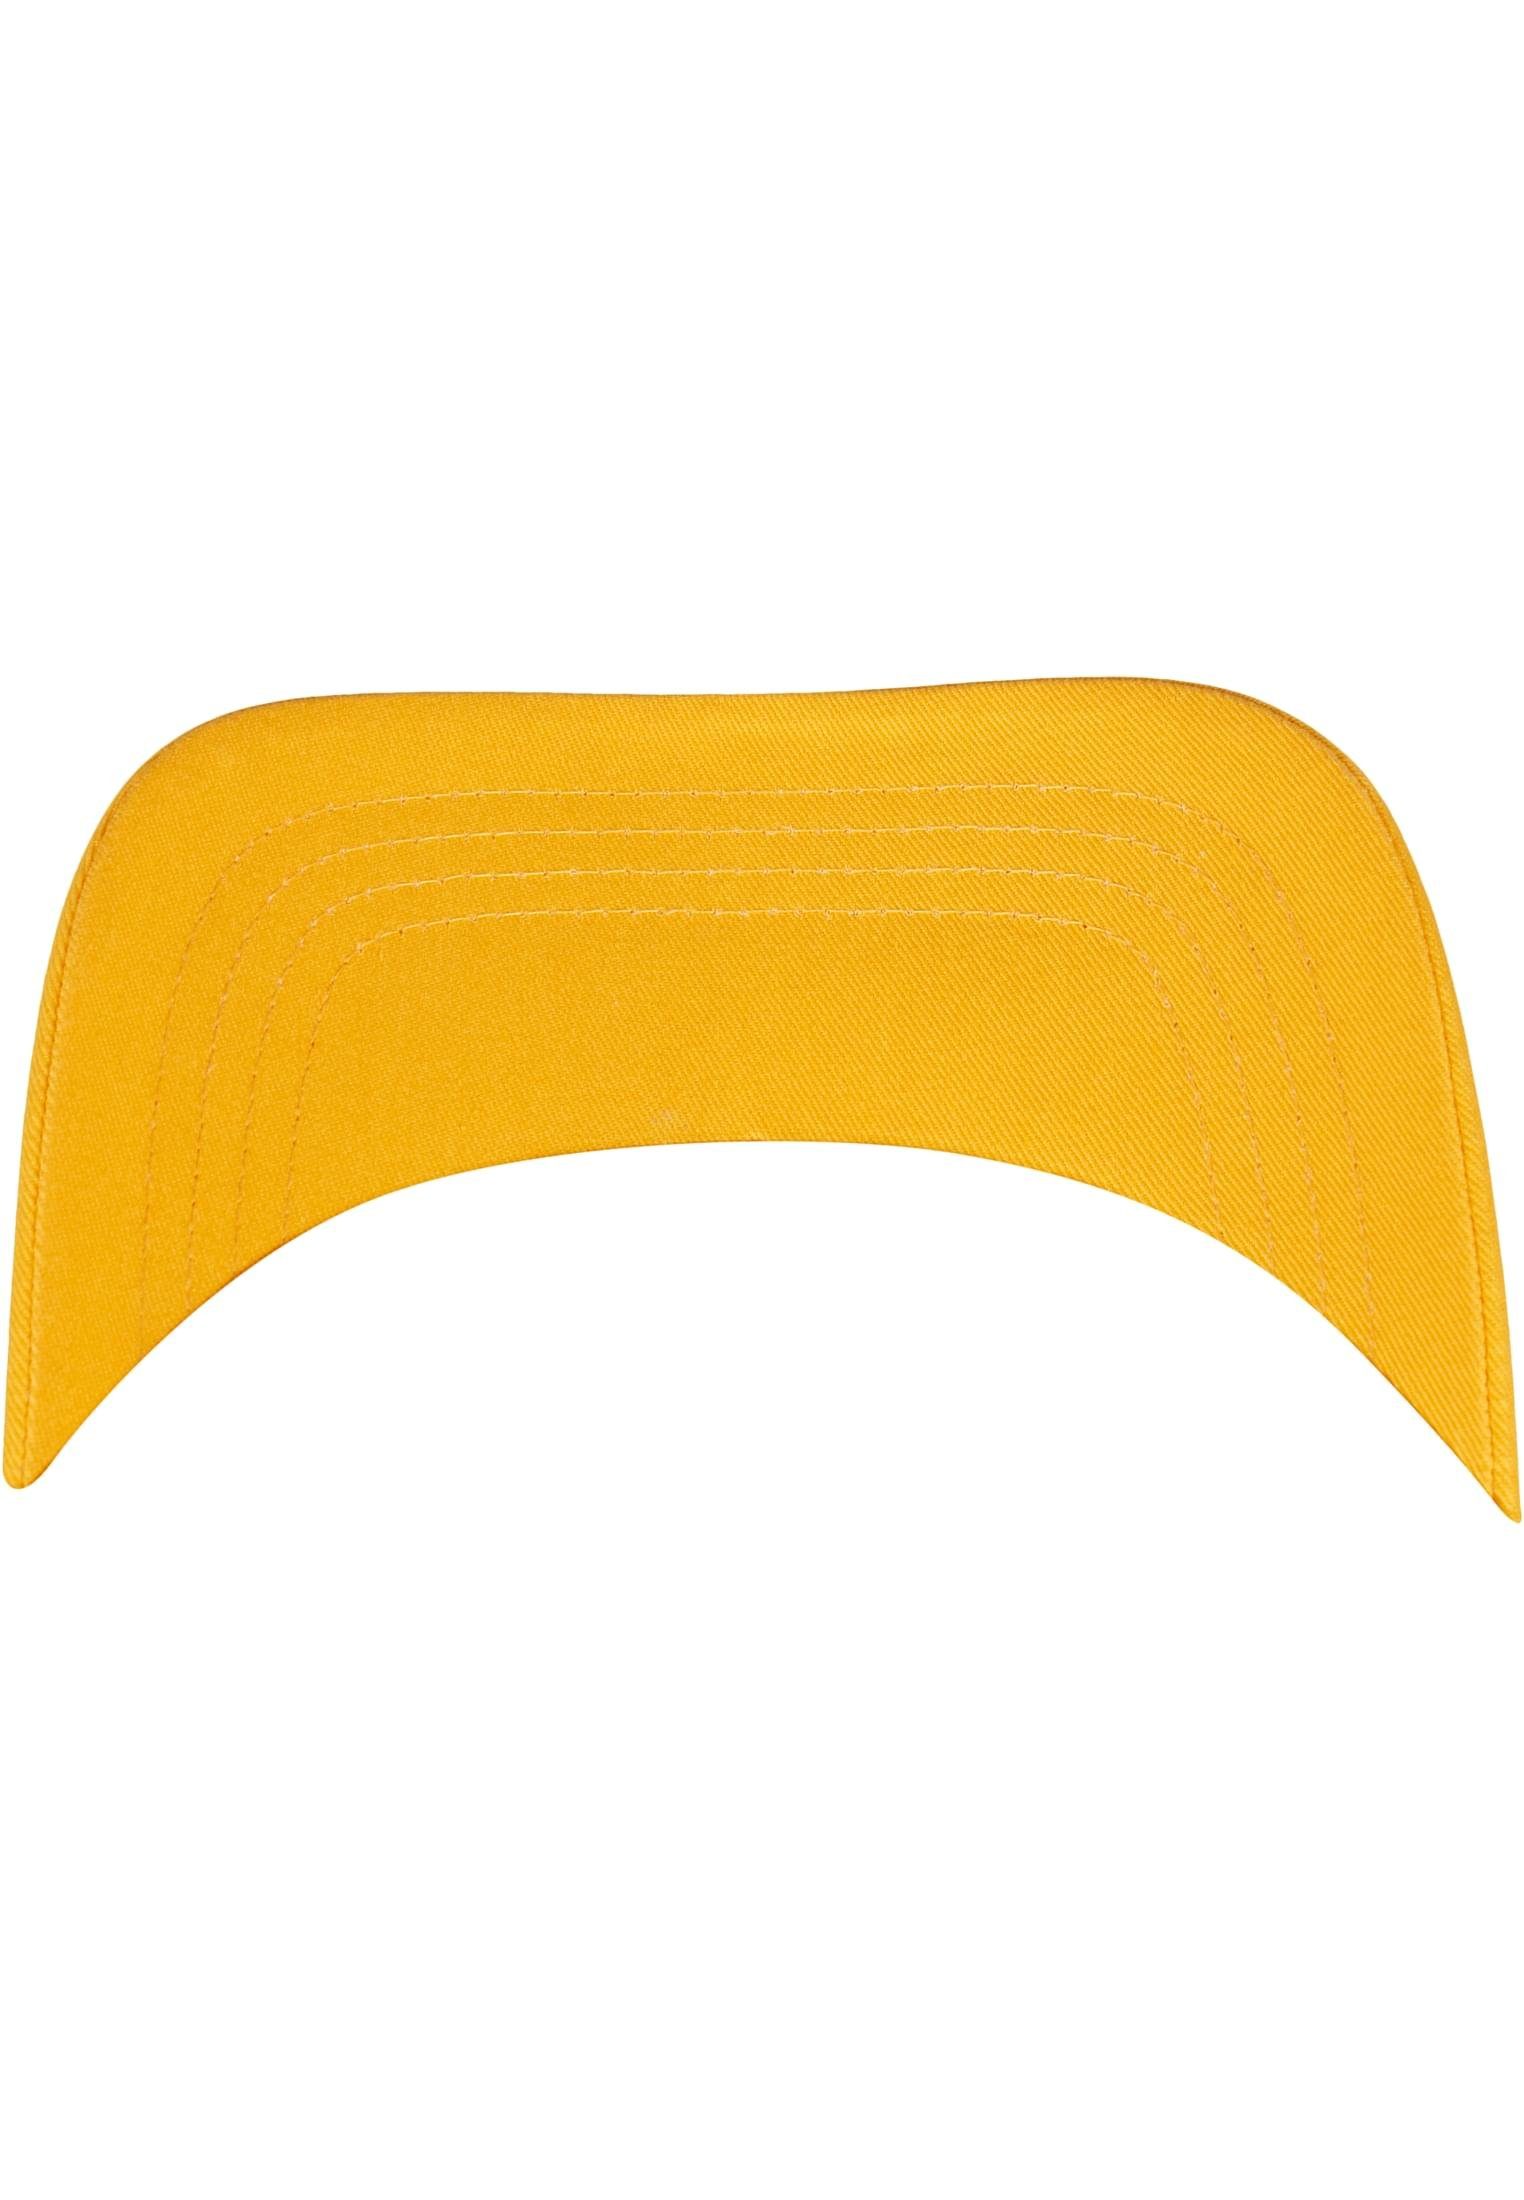 Flexfit Curved Cap Cap Accessoires magicmango Visor Flex